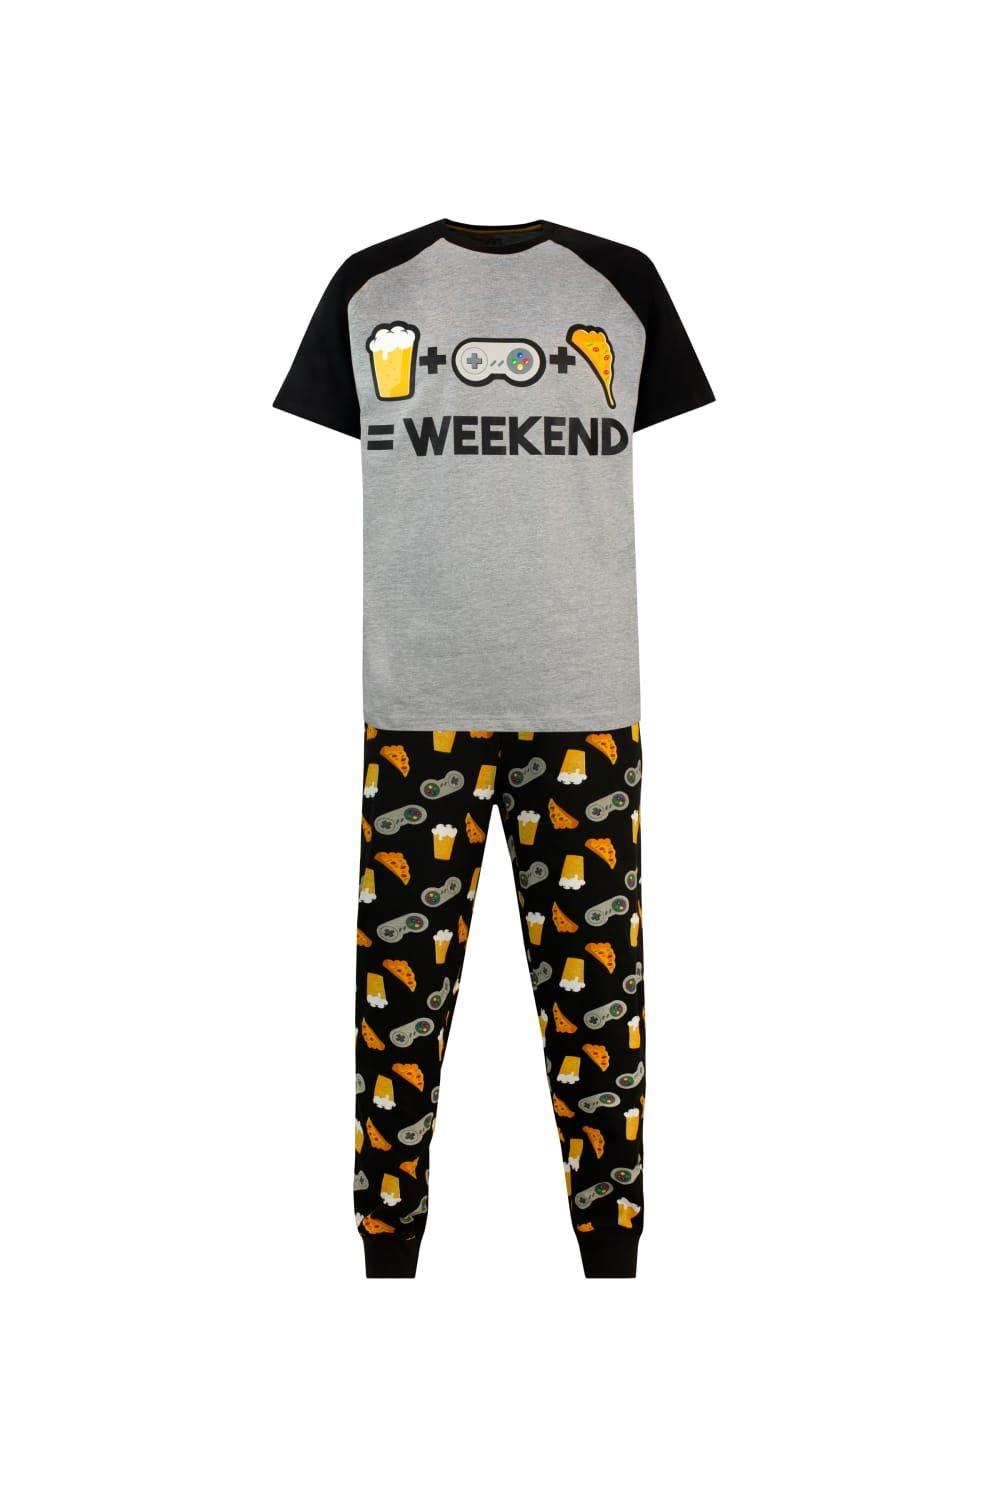 Weekend Pyjamas